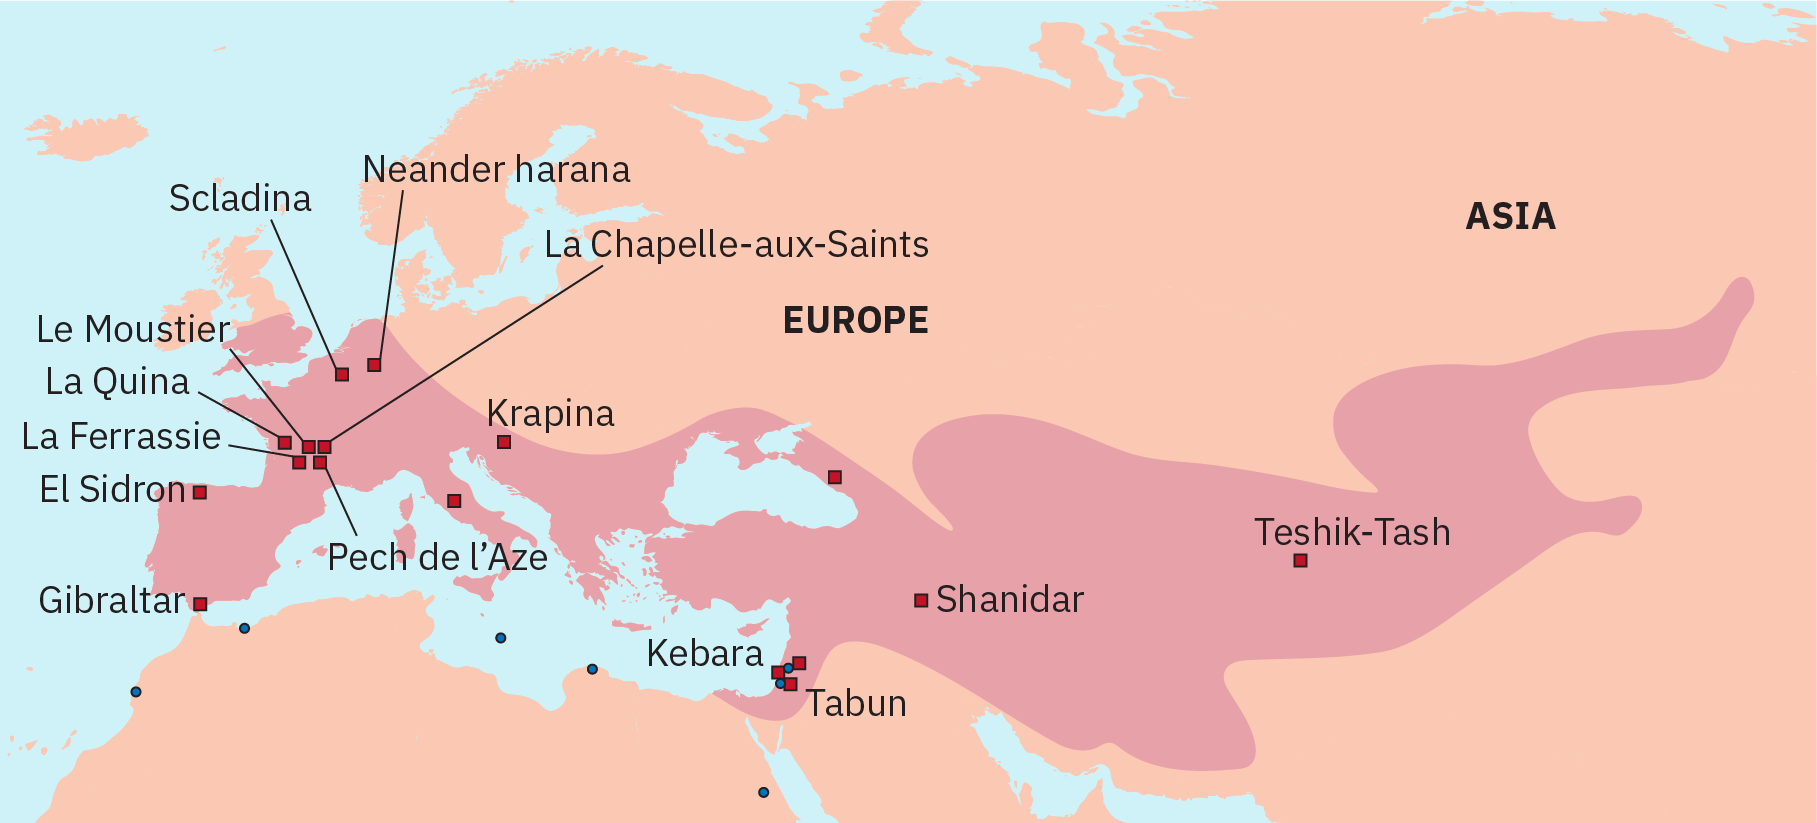 L'emplacement et le territoire des sites apparaissent en Europe, au Moyen-Orient et dans une partie intérieure de l'Asie.